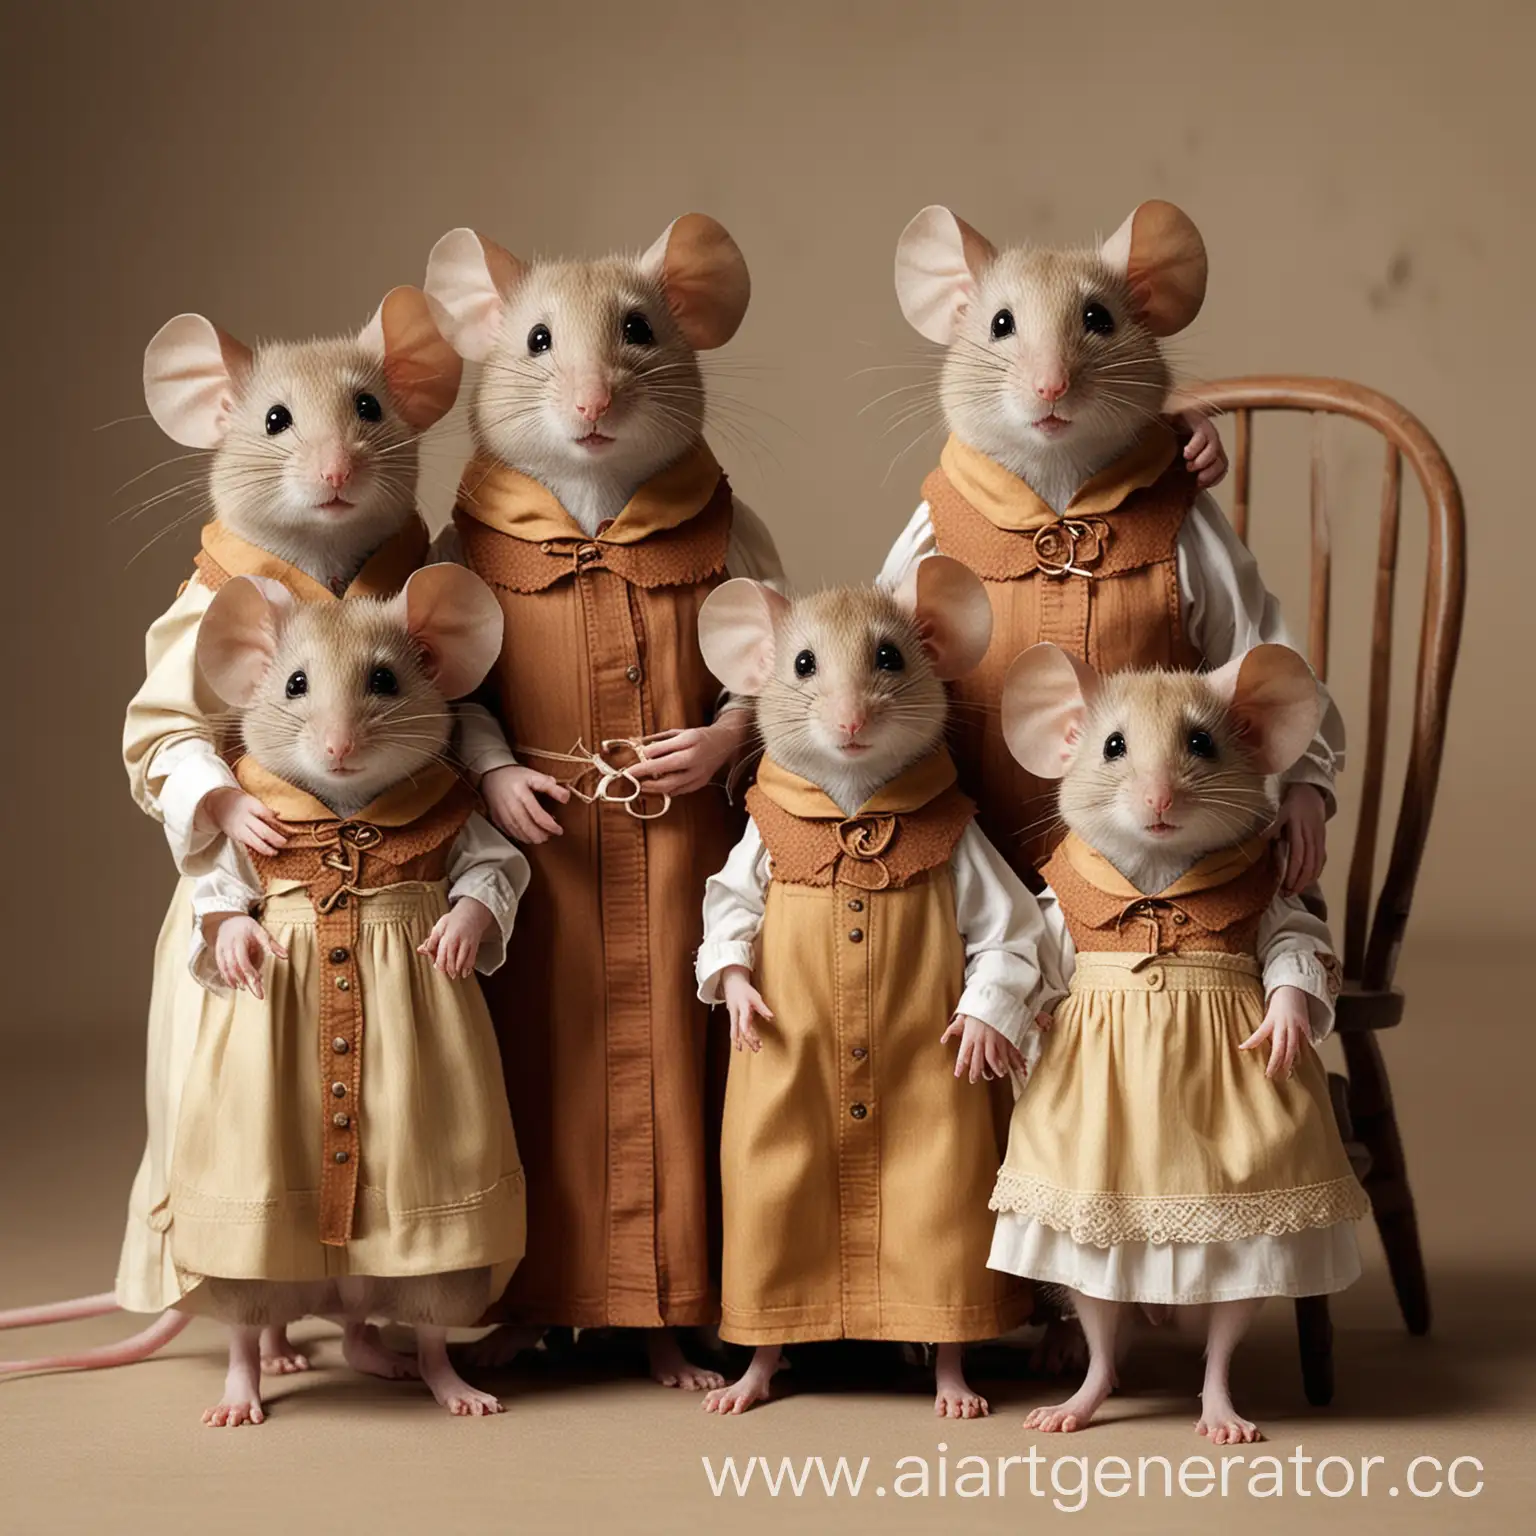 семейство мышей, одетых по-человечески, стоит вокруг кресла
